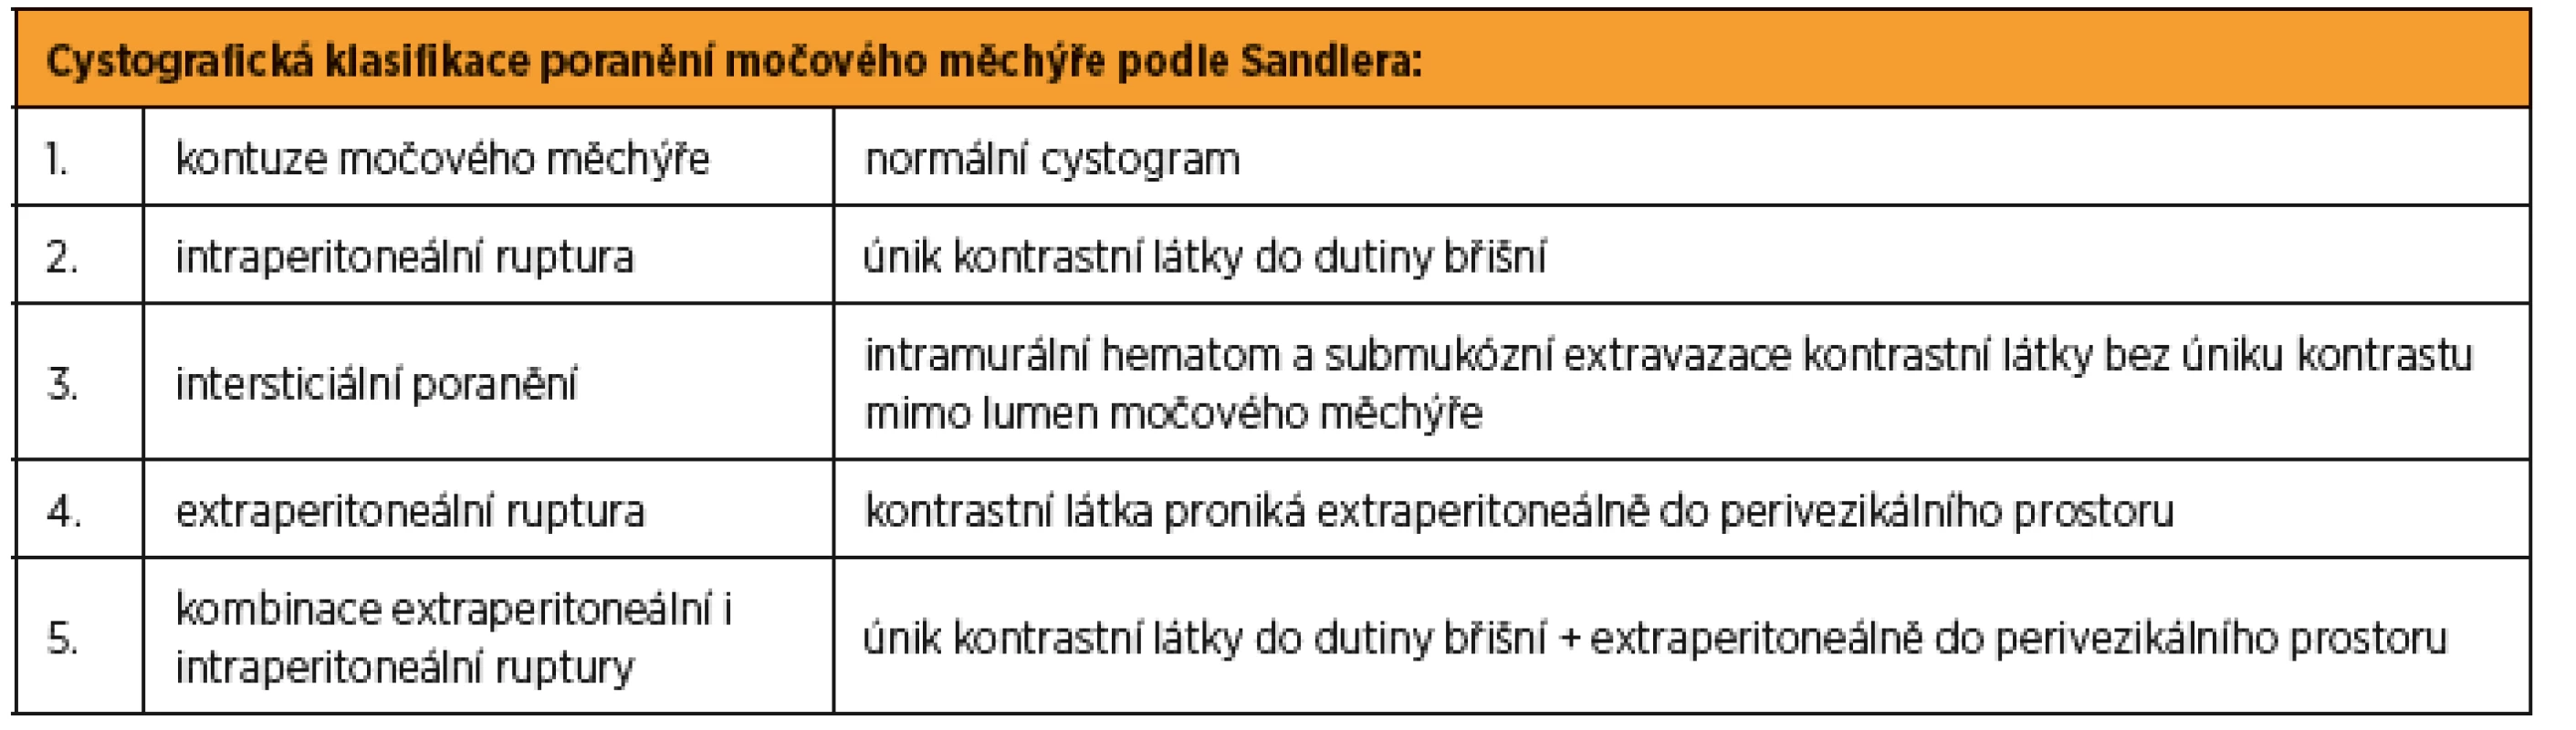 Cystografická klasifikace poranění močového měchýře podle Sandlera